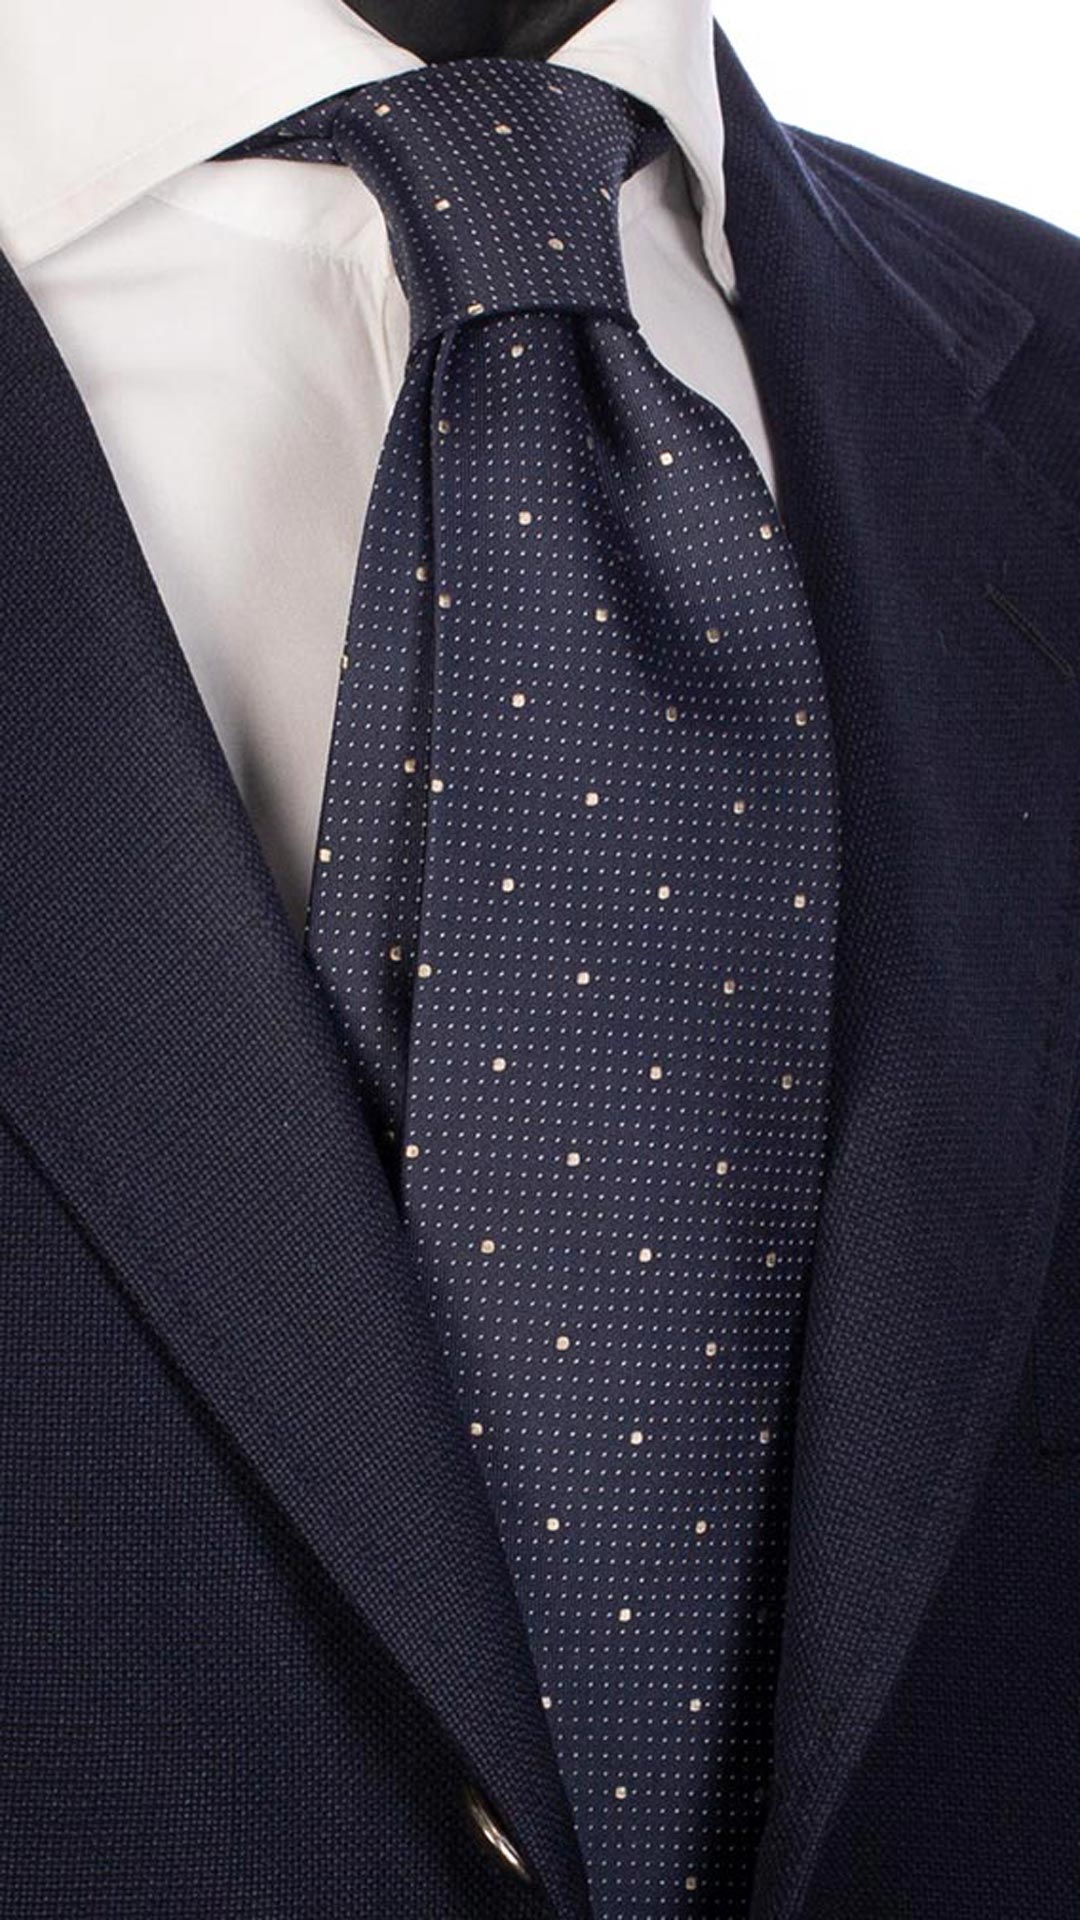 Cravatta da Cerimonia di Seta Grigio Punto A Spillo Bianco Pois Bianchi CY2364 Made in Italy Graffeo Cravatte